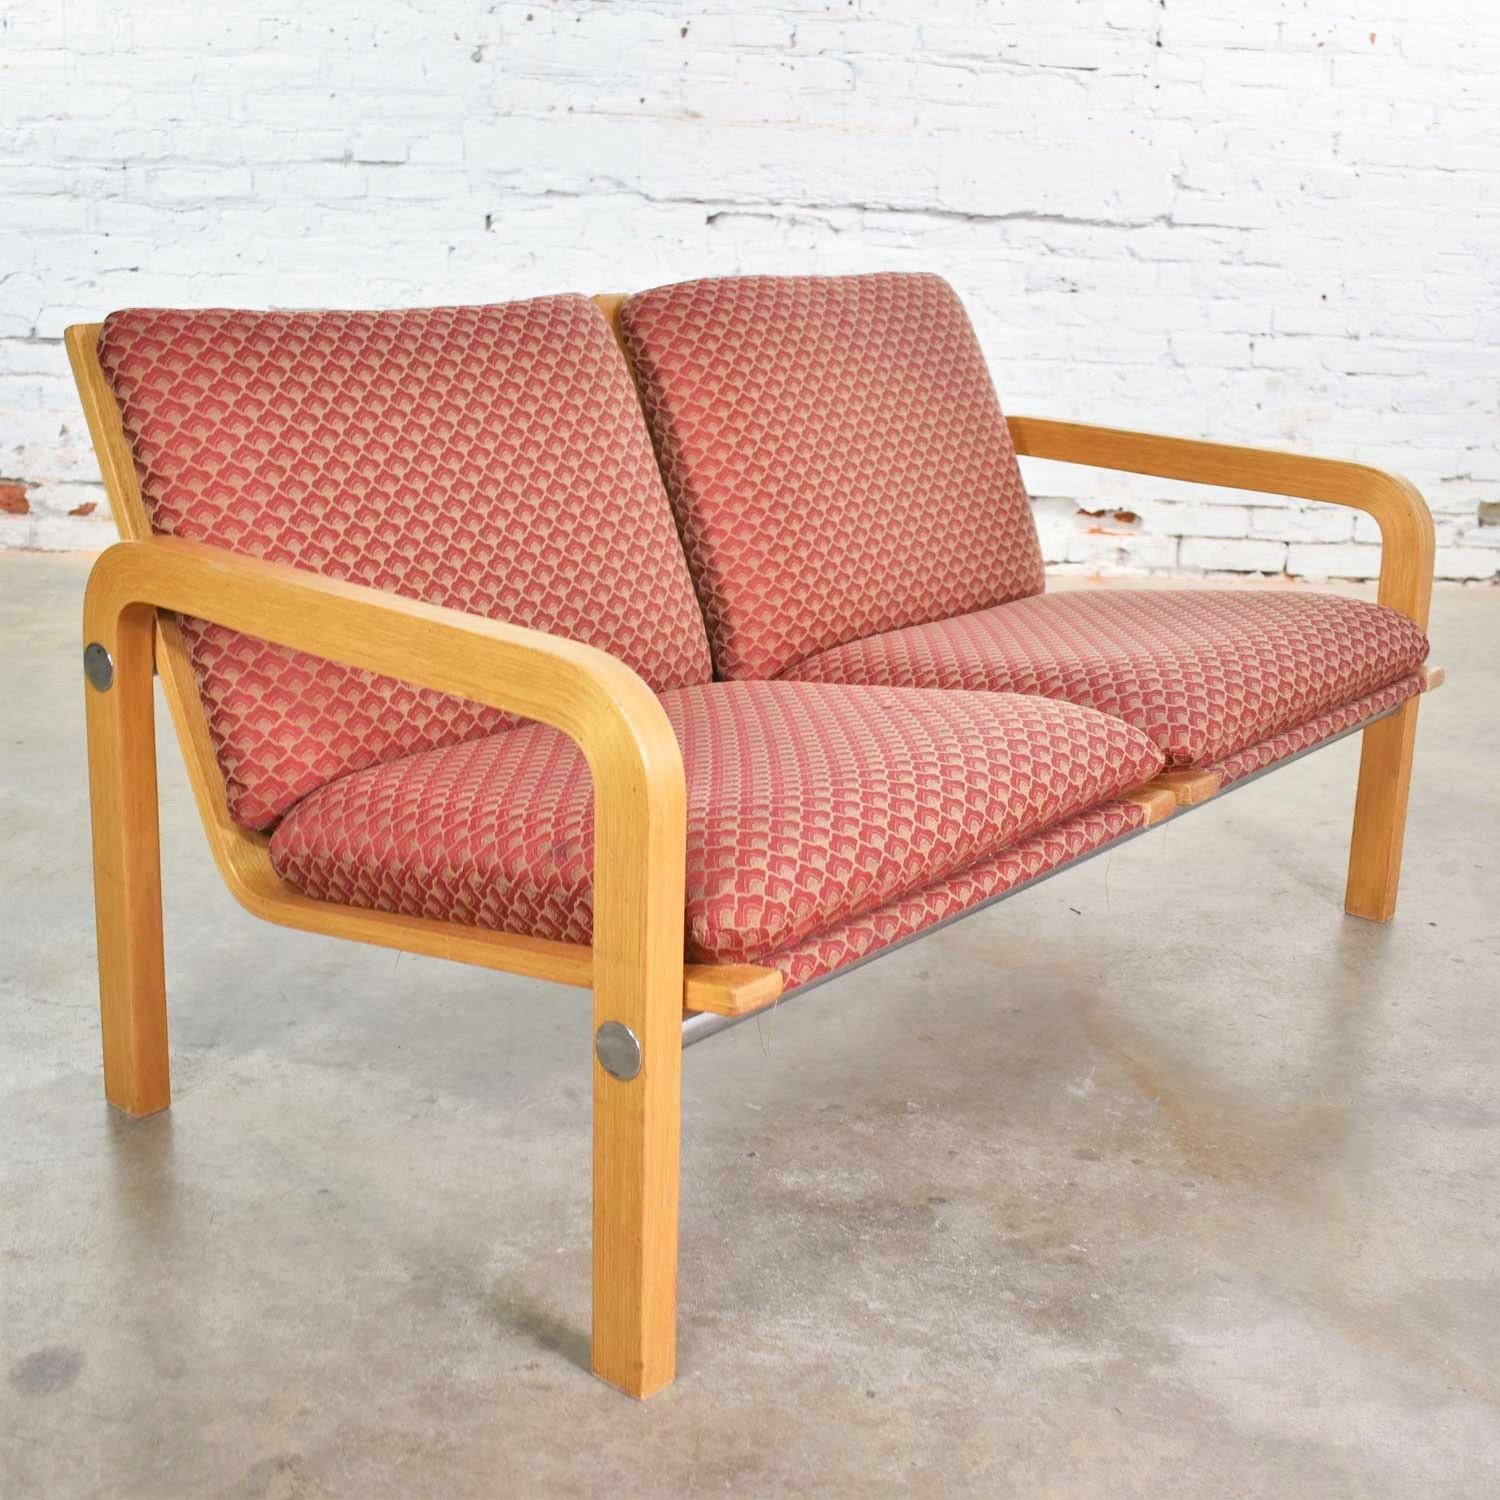 Hübsches zweisitziges modernes Sofa oder Bank aus Eichenbugholz, Chrom und Polsterung, Thonet zugeschrieben. Es ist in einem wunderbaren Vintage-Zustand. Das Holz, das Chrom und der Stoff sind in gebrauchsfertigem Zustand, obwohl der Stoff